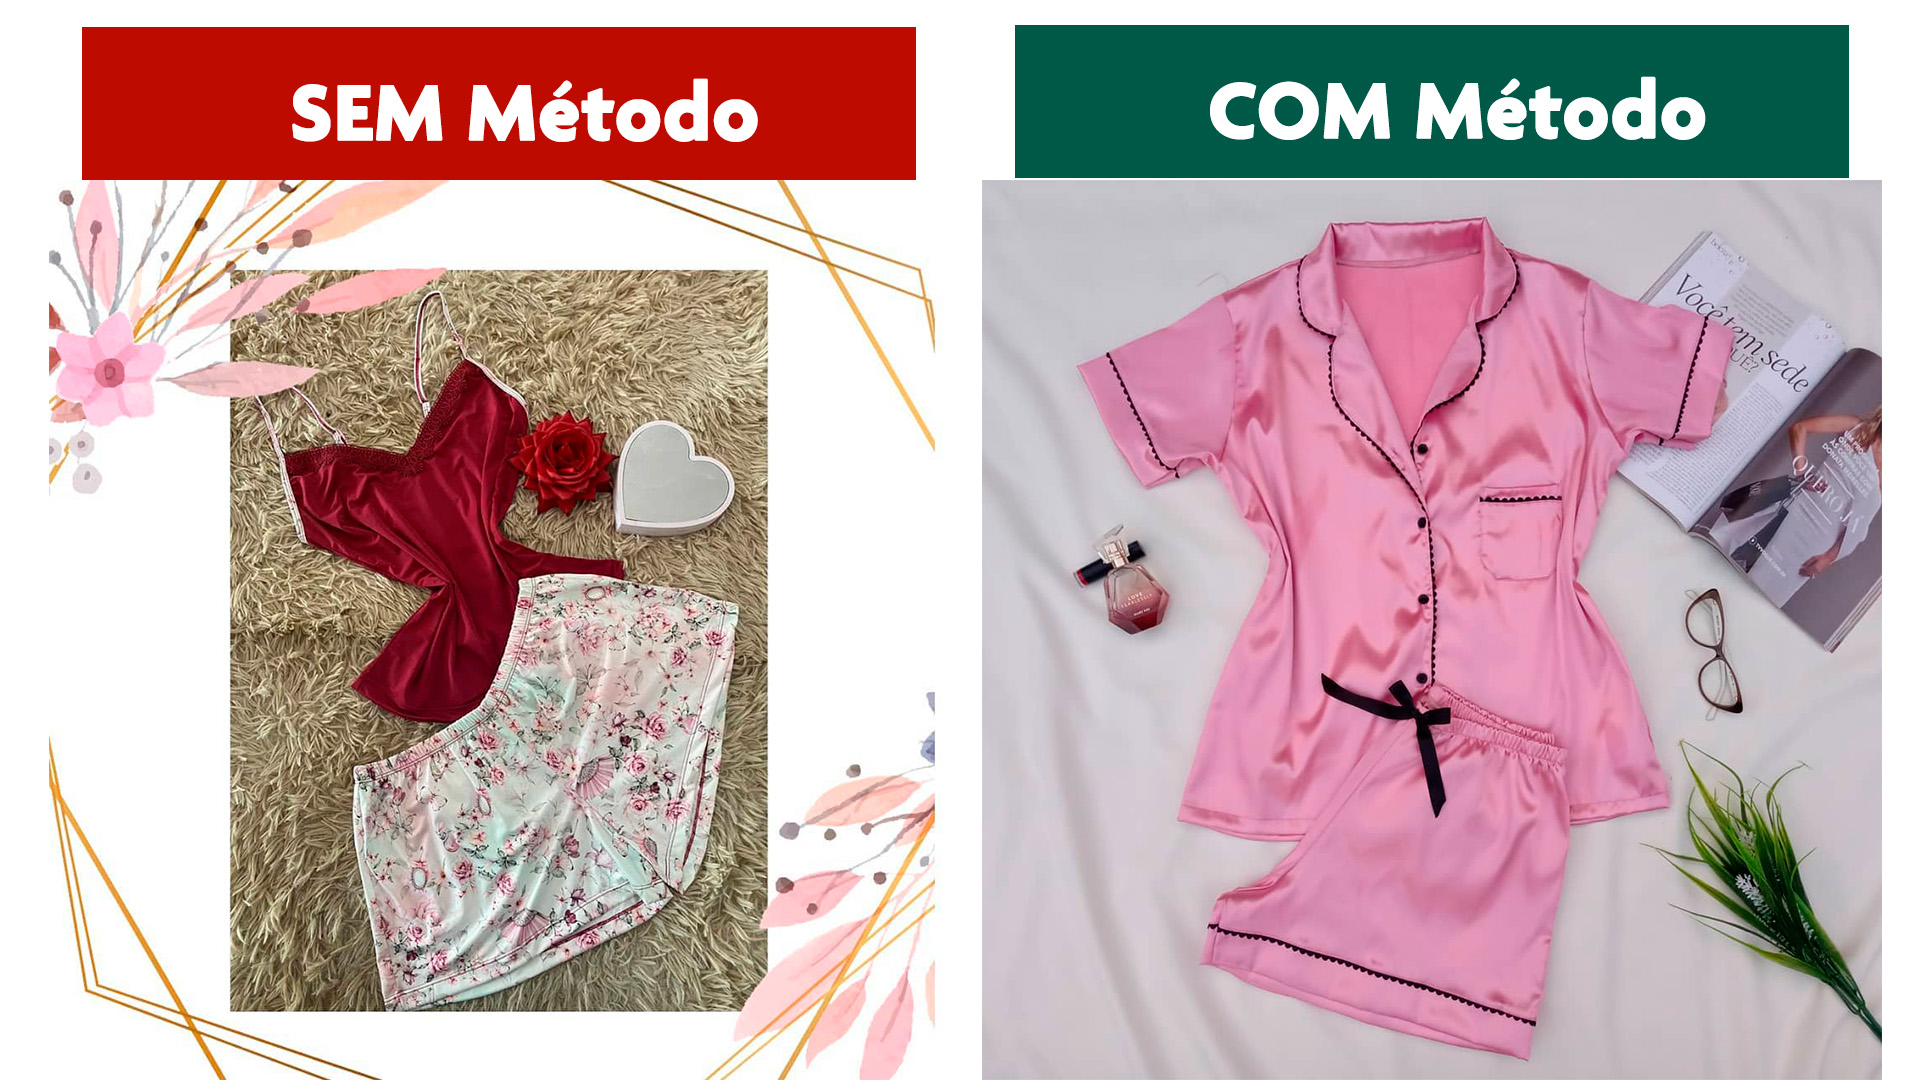 foto de pijama com metodo fotos que vendem